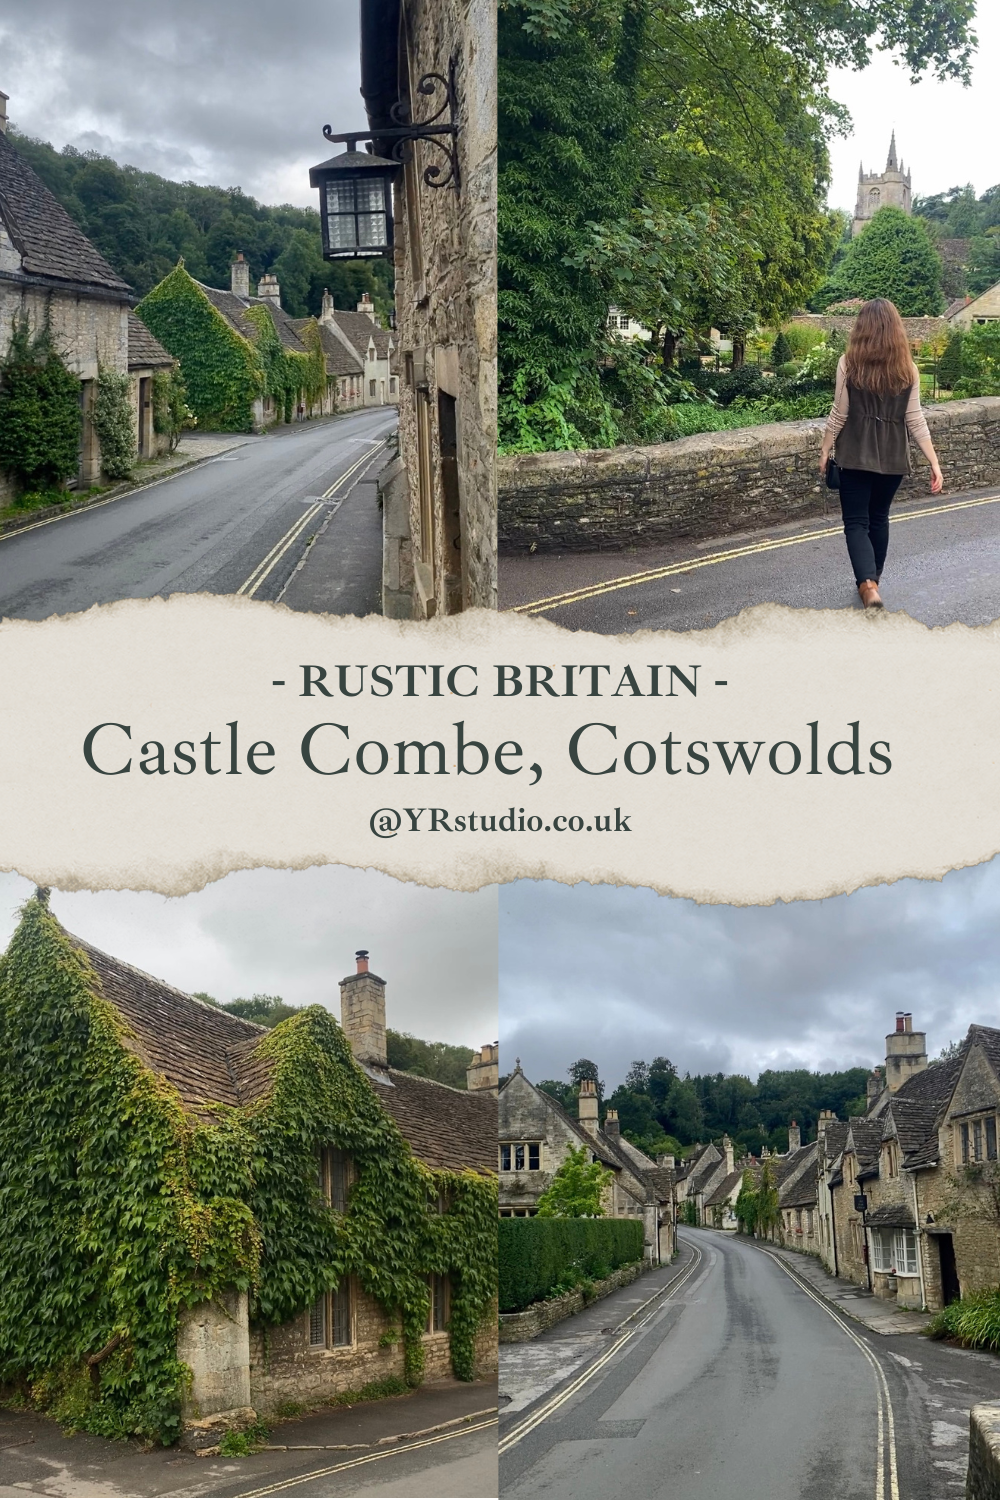 Visit Castle Combe, Cotswolds